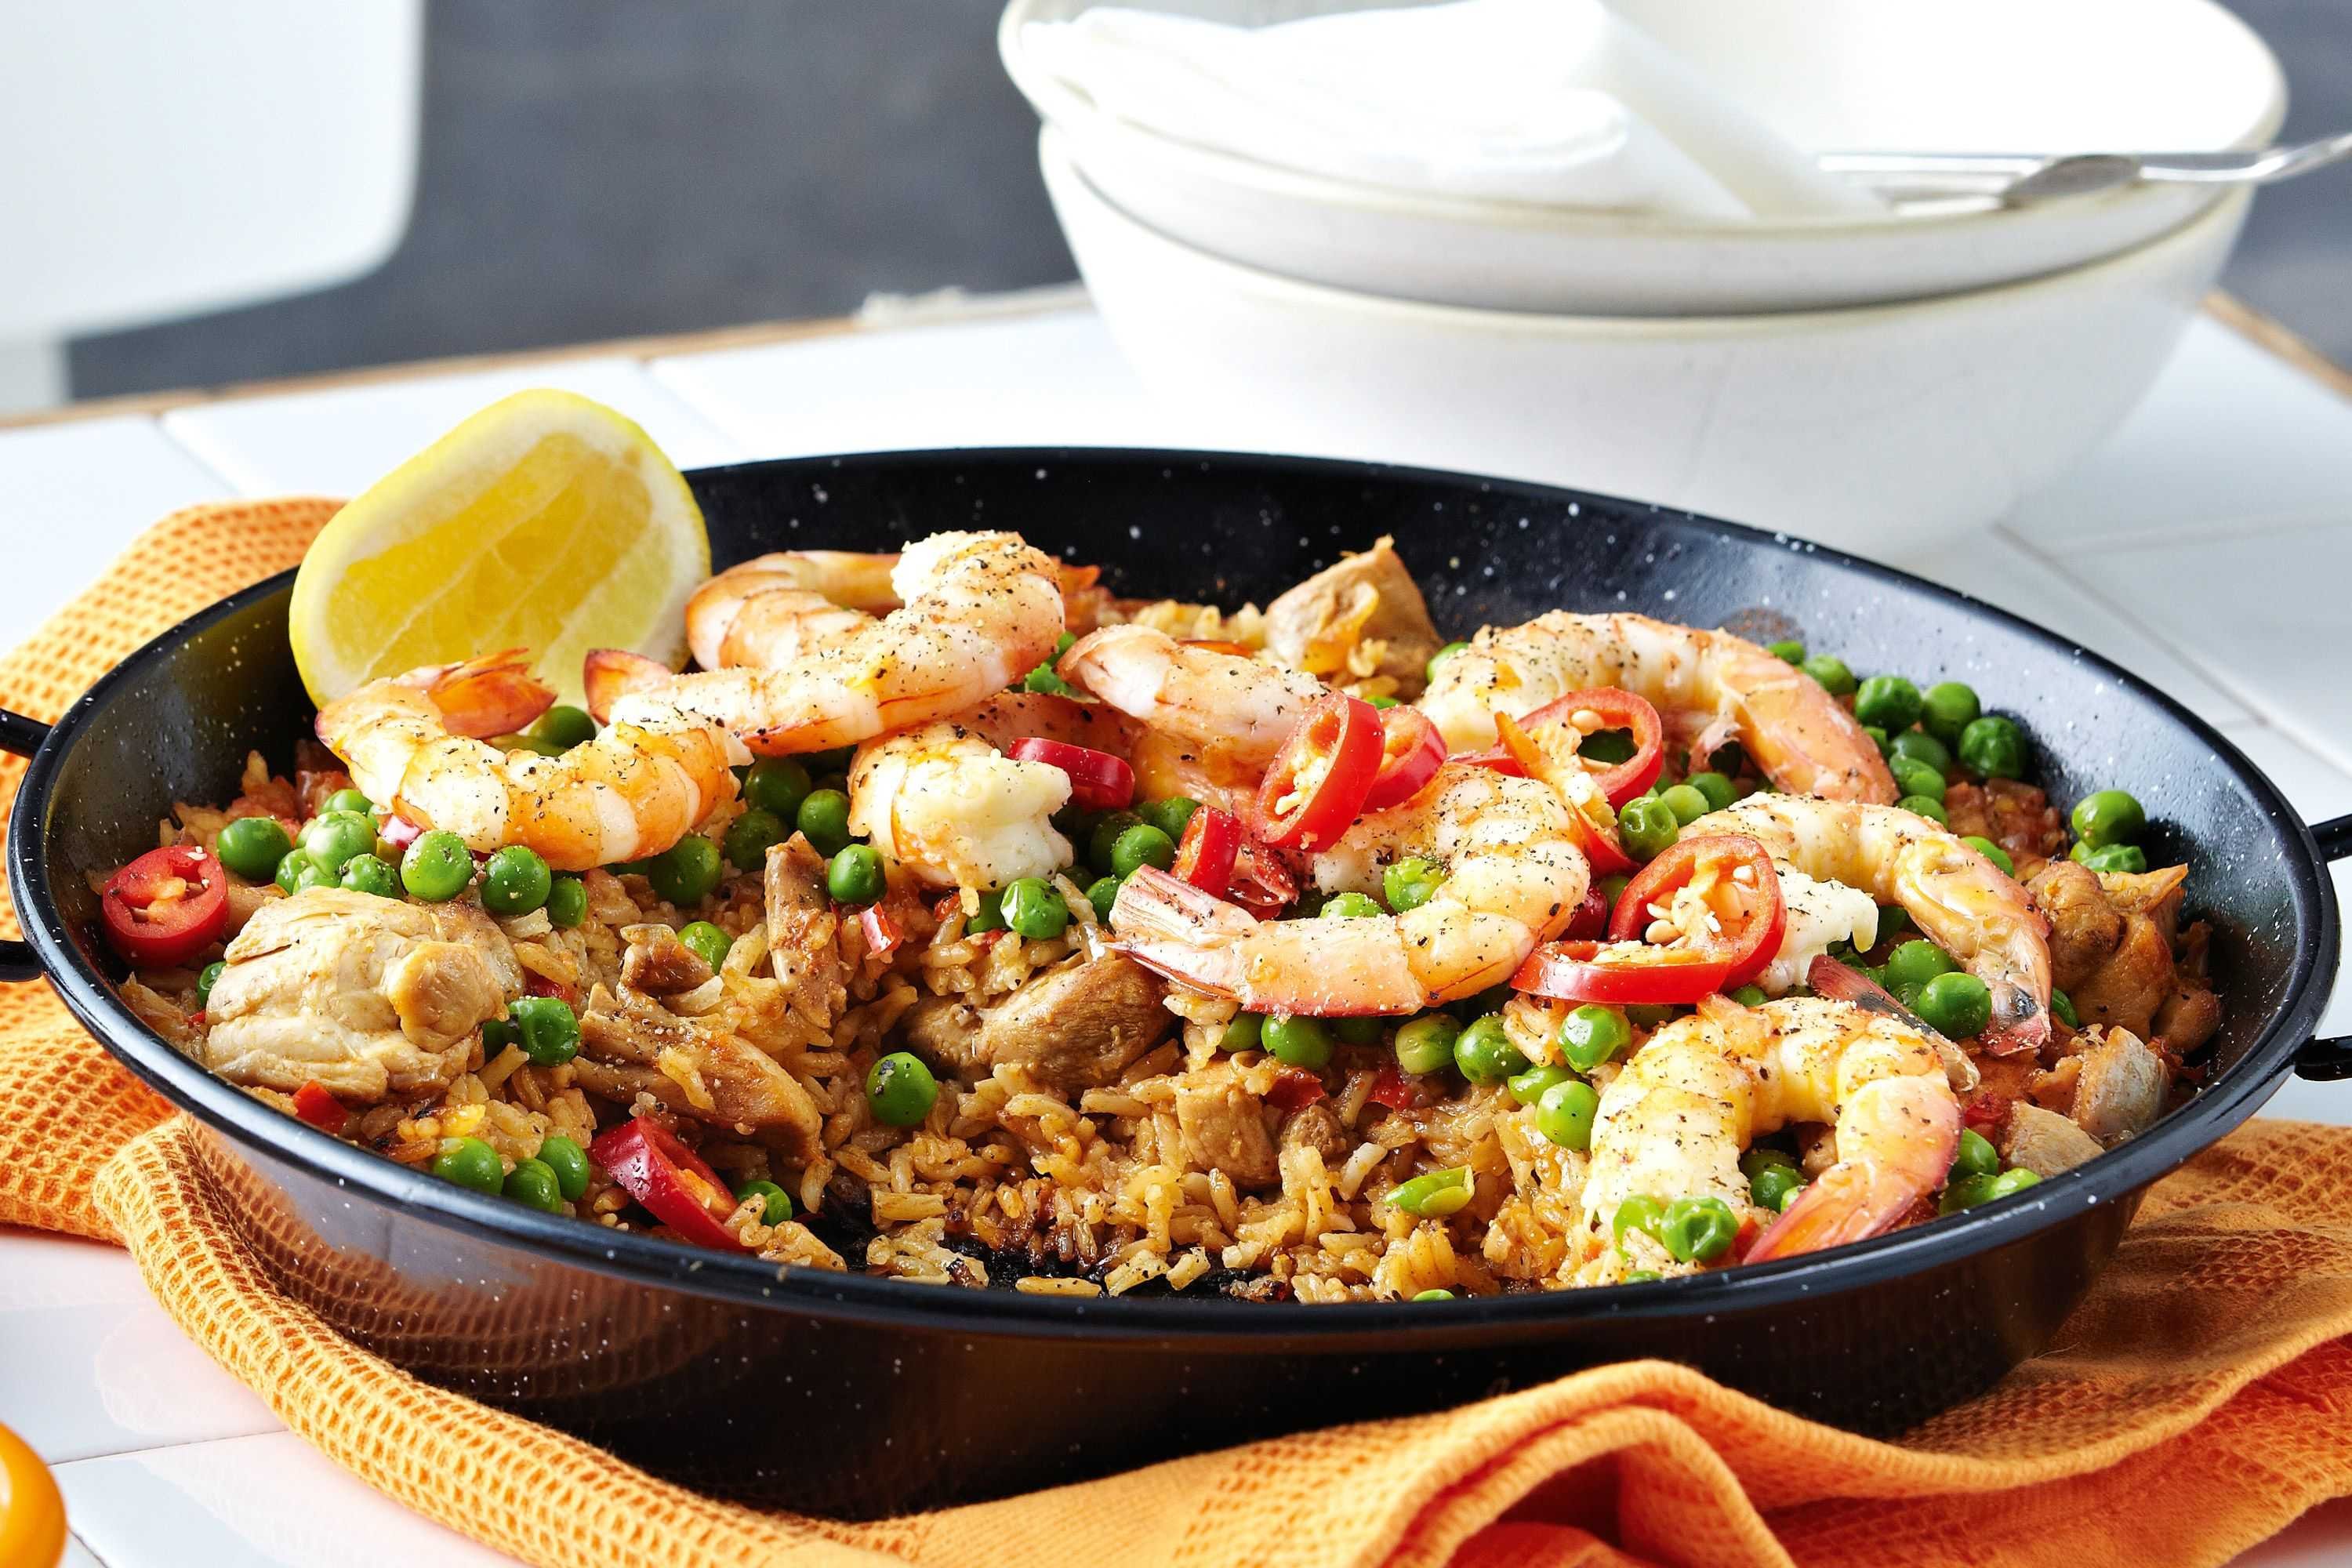 Recipes of dishes. Испанская паэлья. Паэлья с морепродуктами и цыпленком. Испанский рис паэлья. Испанская паэлья с морепродуктами.